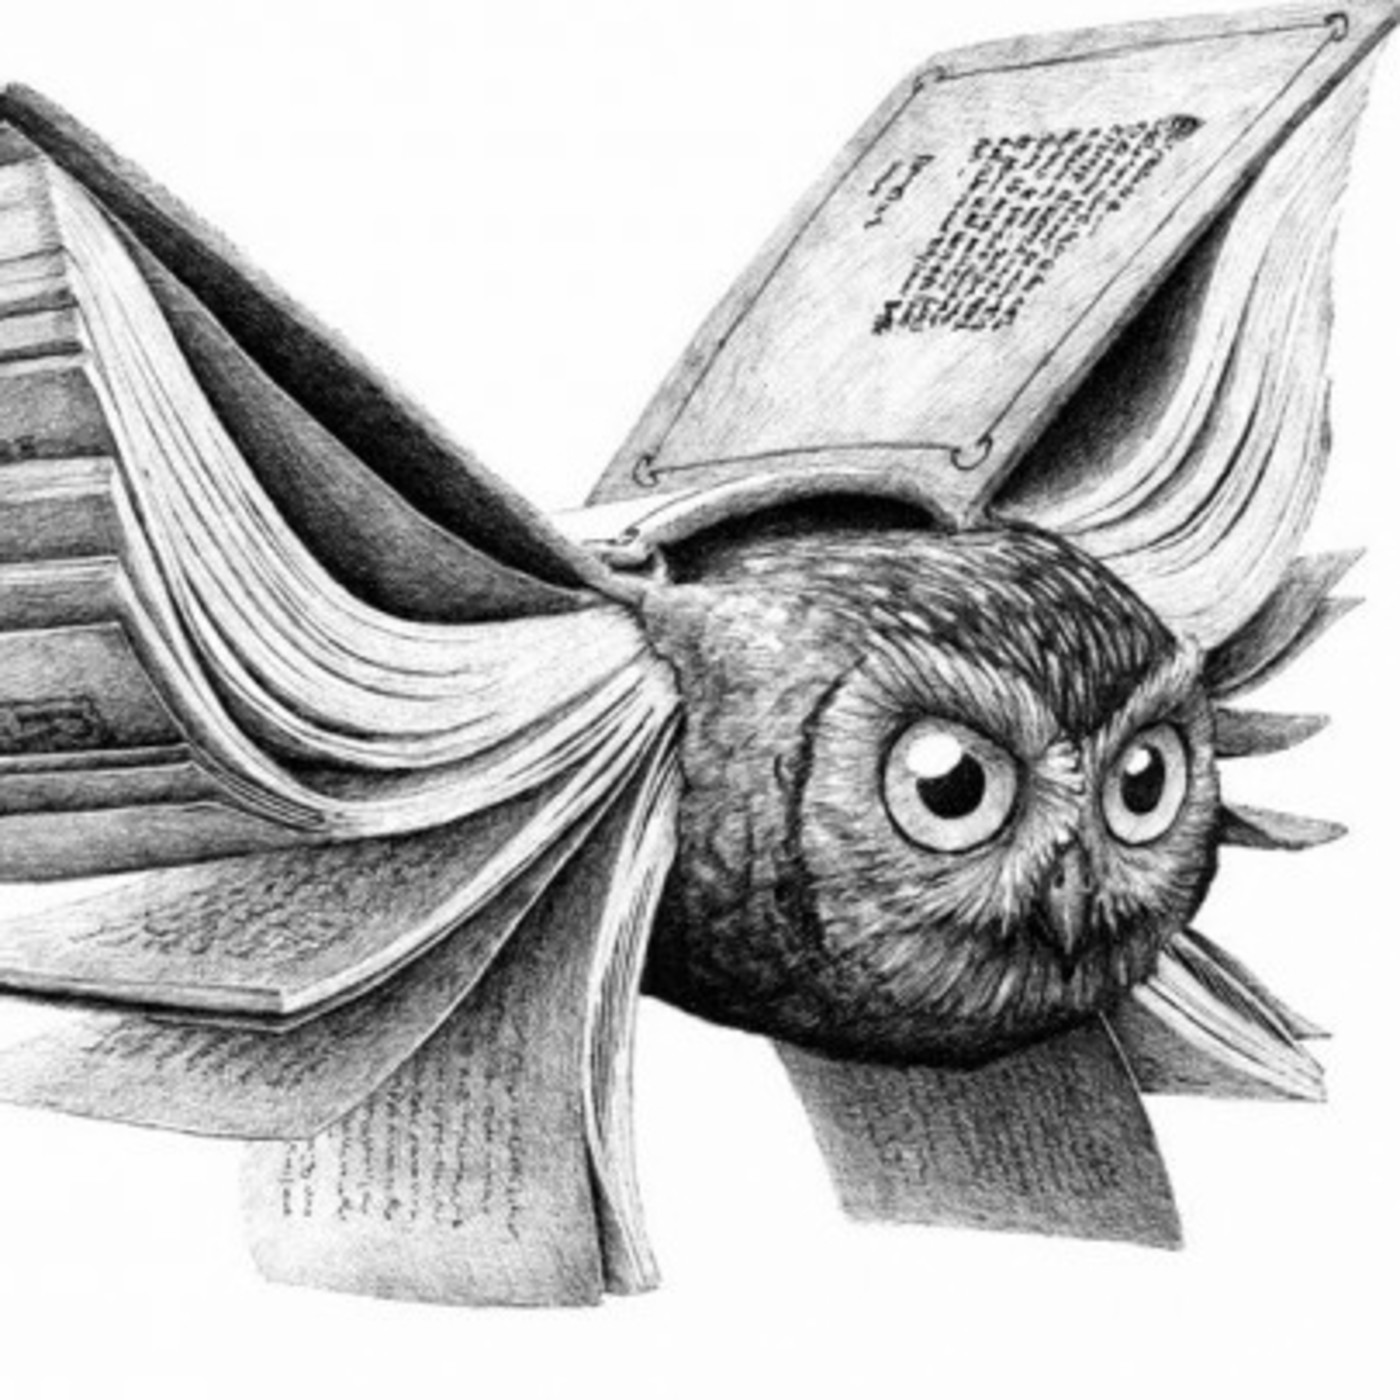 Audiolibro: Fábulas en verso (originales), de Concepción Arenal (1851)